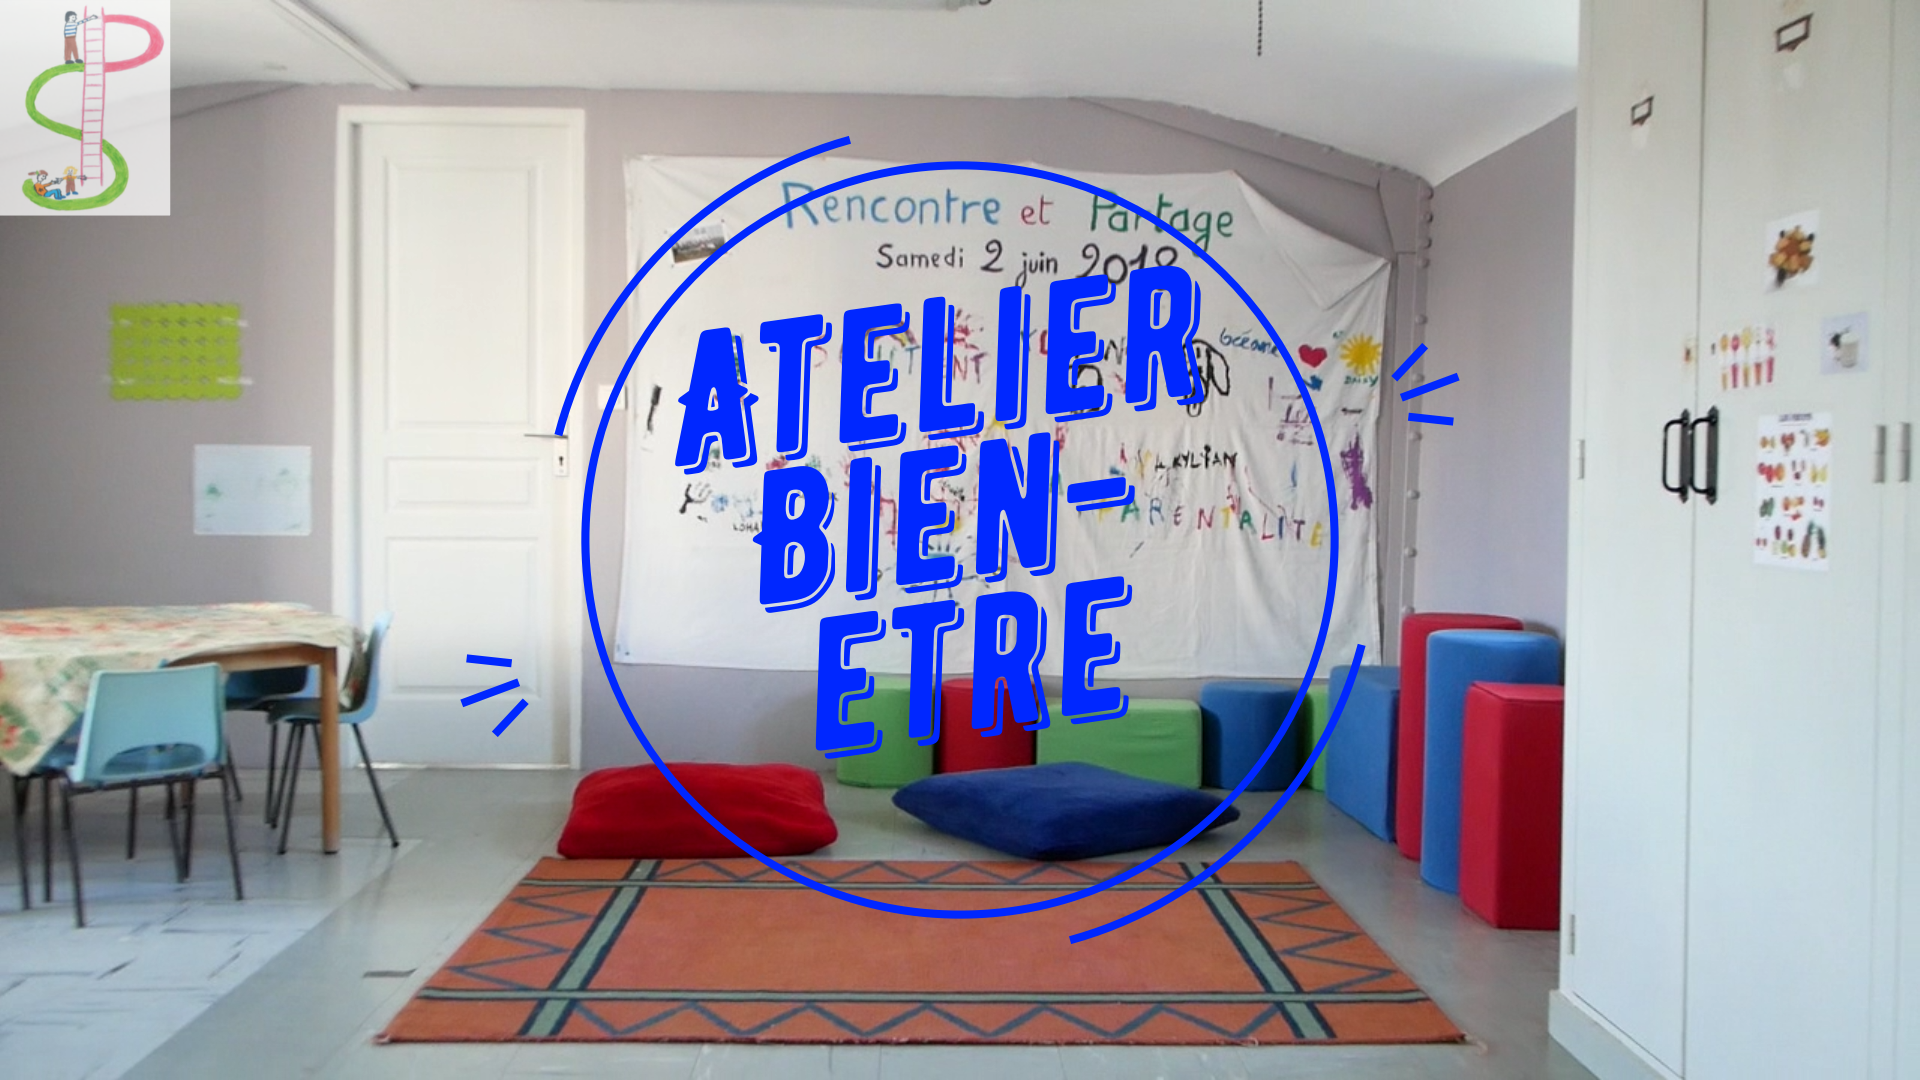 La vidéo du 2ème atelier Bien-être d'Émeline est publiée !